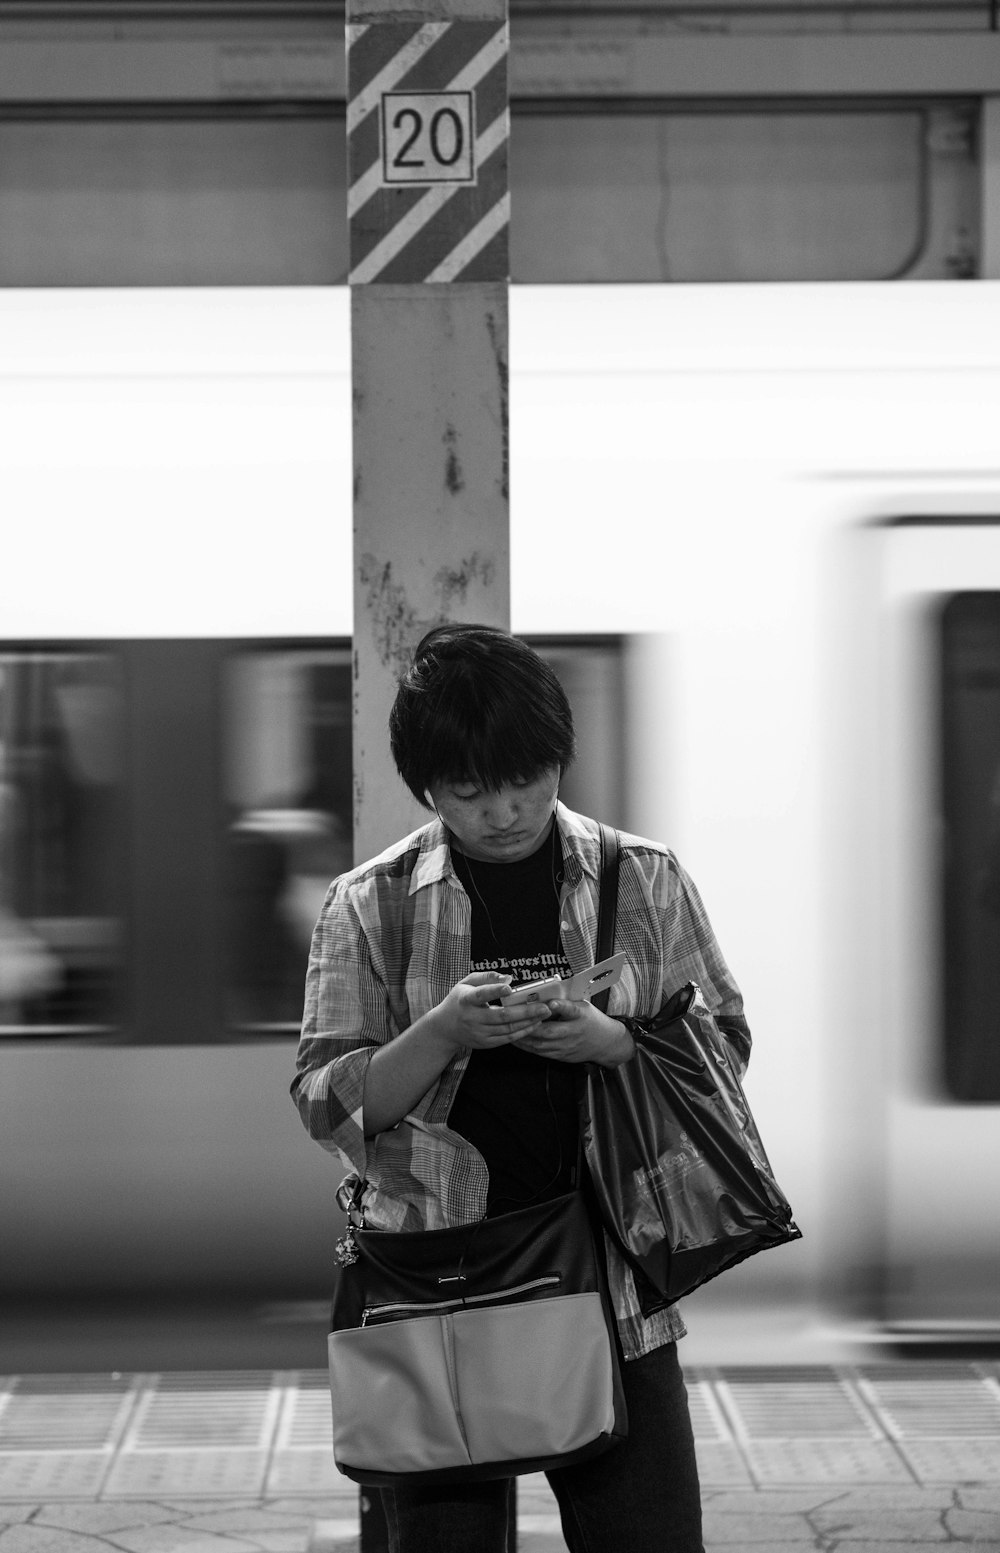 fotografia em tons de cinza do homem usando o telefone enquanto está em pé